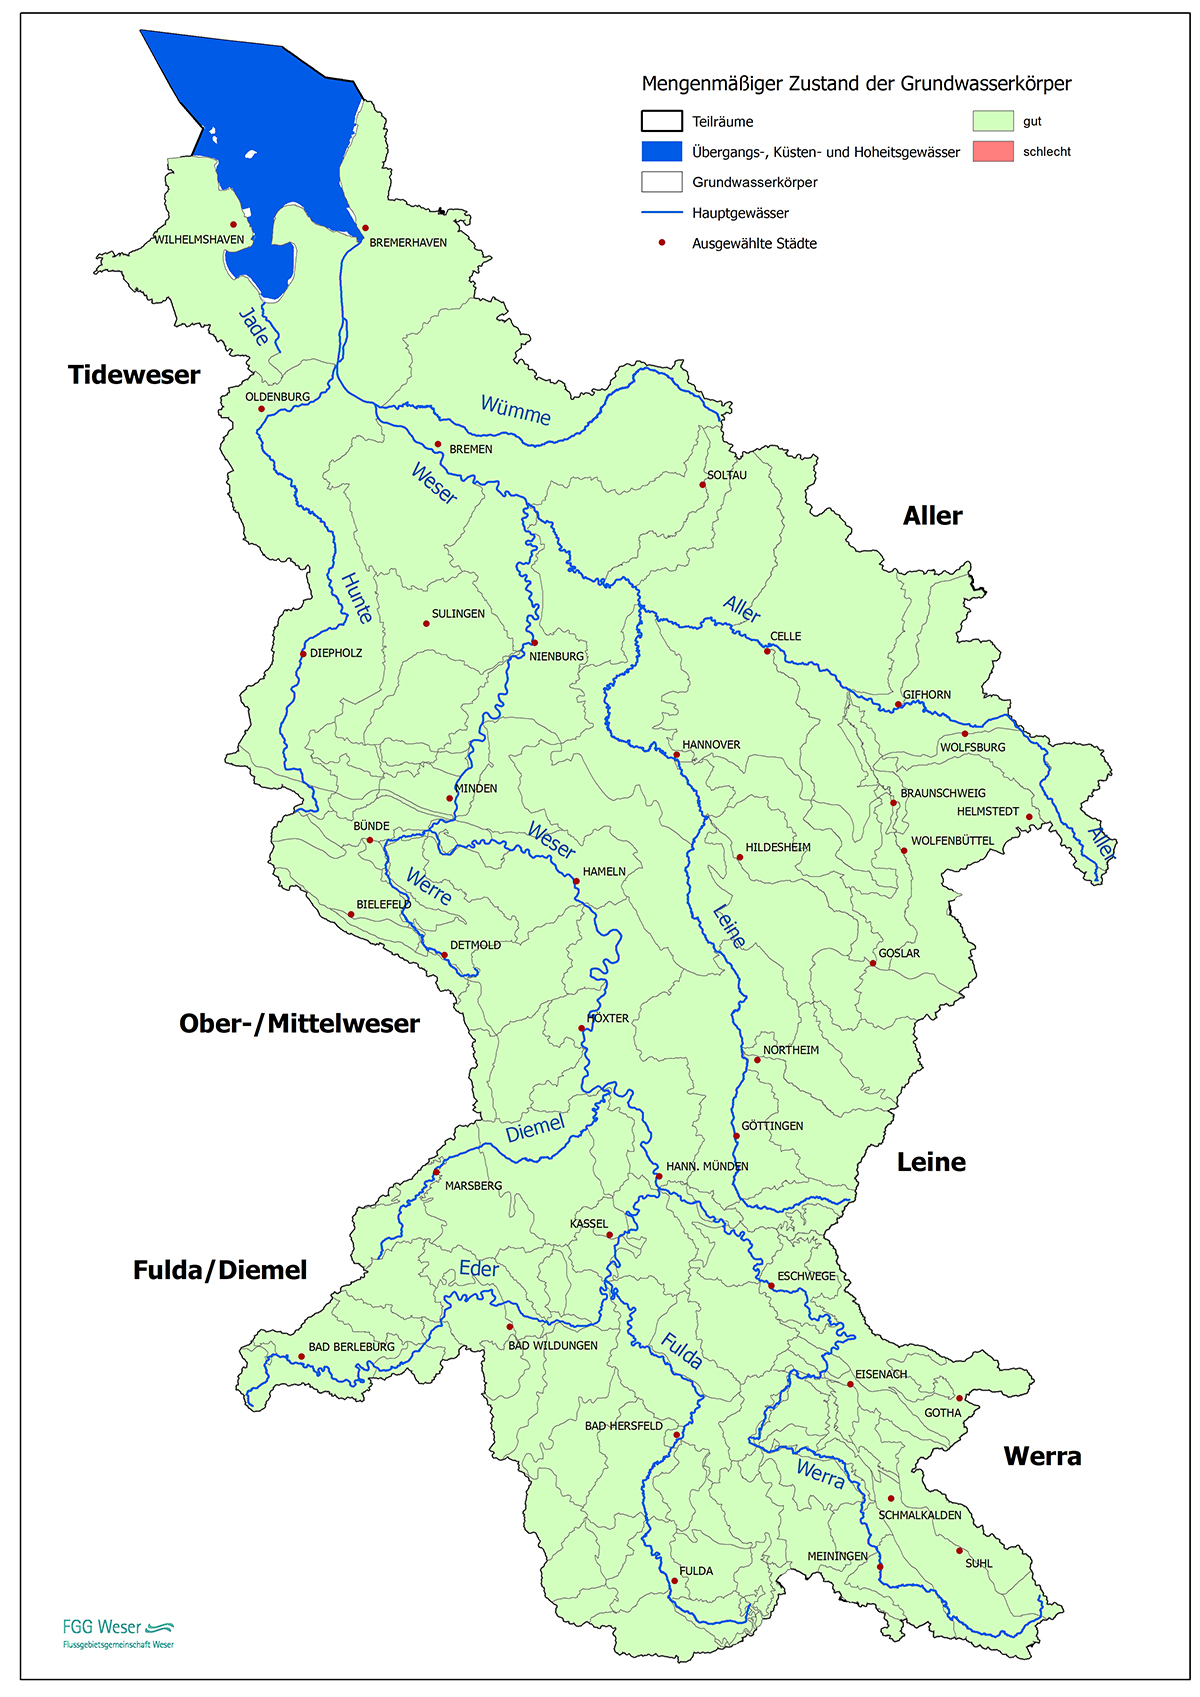 Mengenmäßiger Zustand der Grundwasserkörper (FGG Weser, 2021)